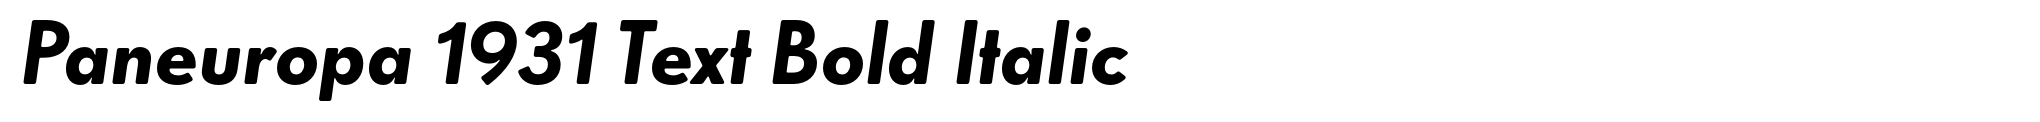 Paneuropa 1931 Text Bold Italic image